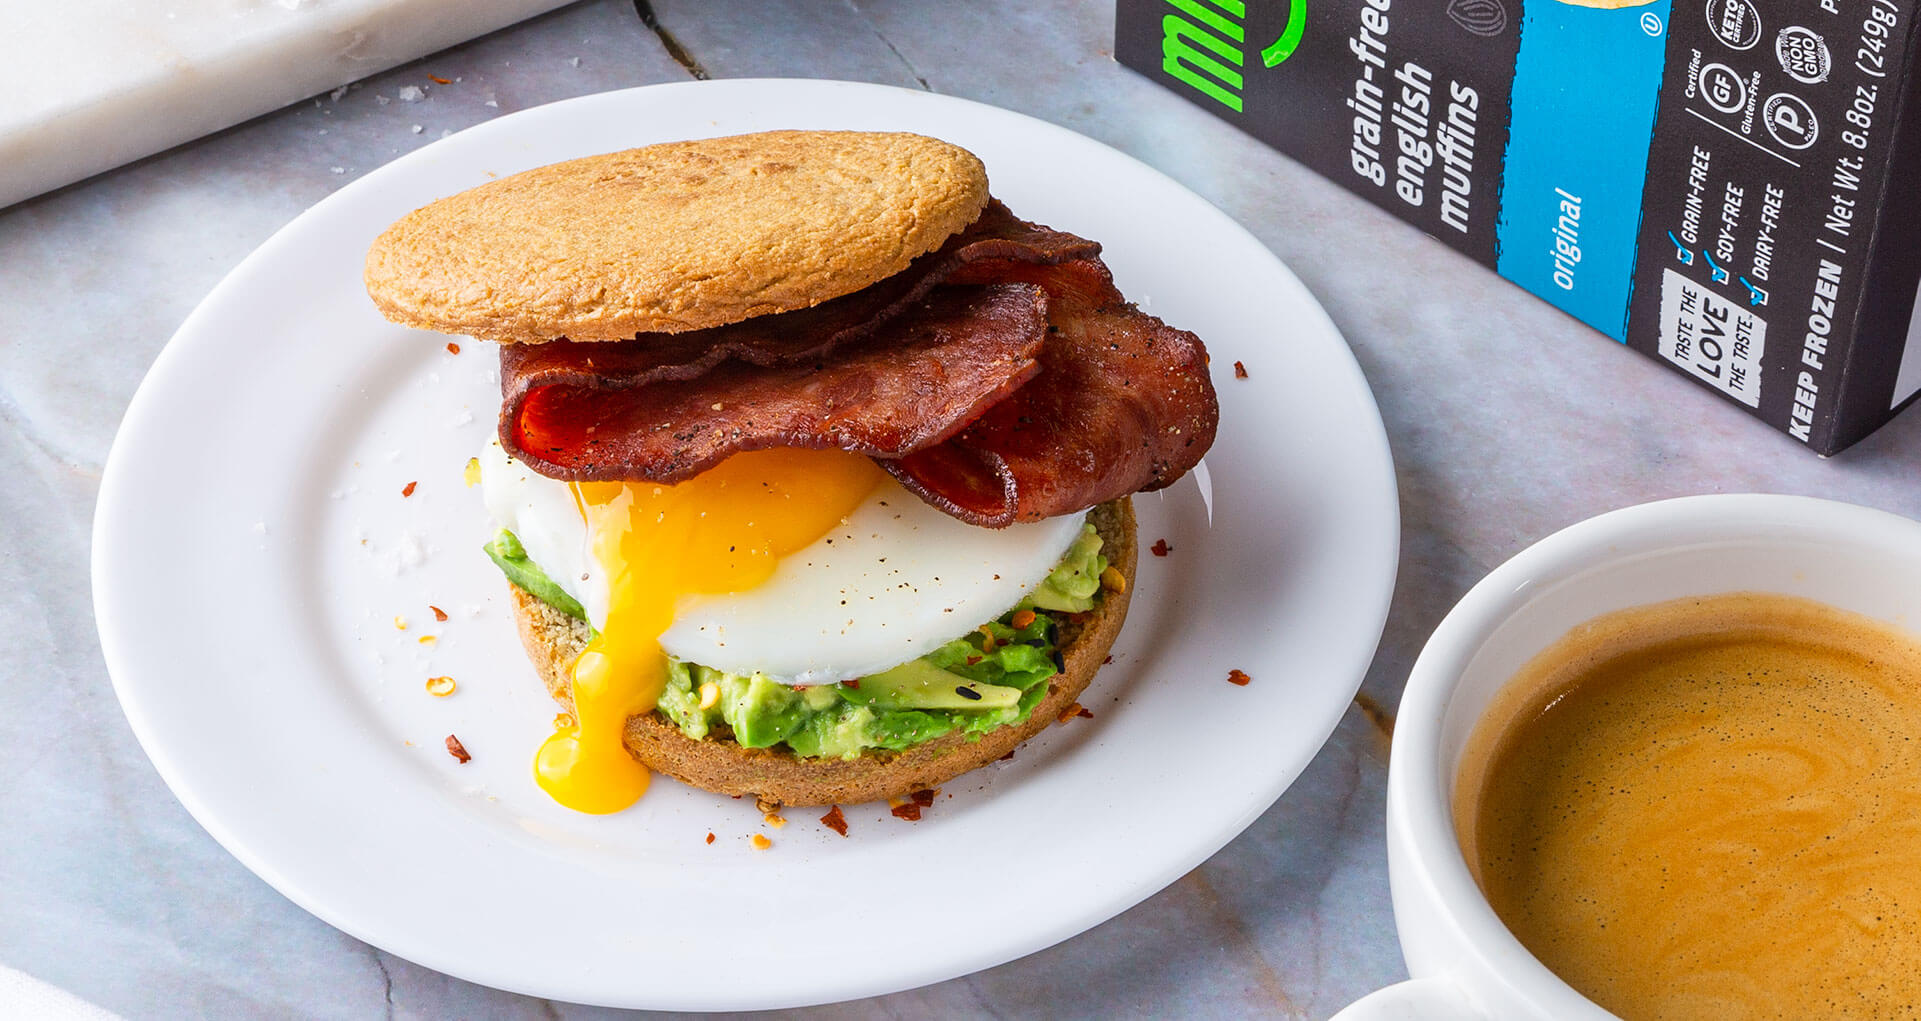 10 Easy Gluten-Free Breakfast and Brunch Ideas